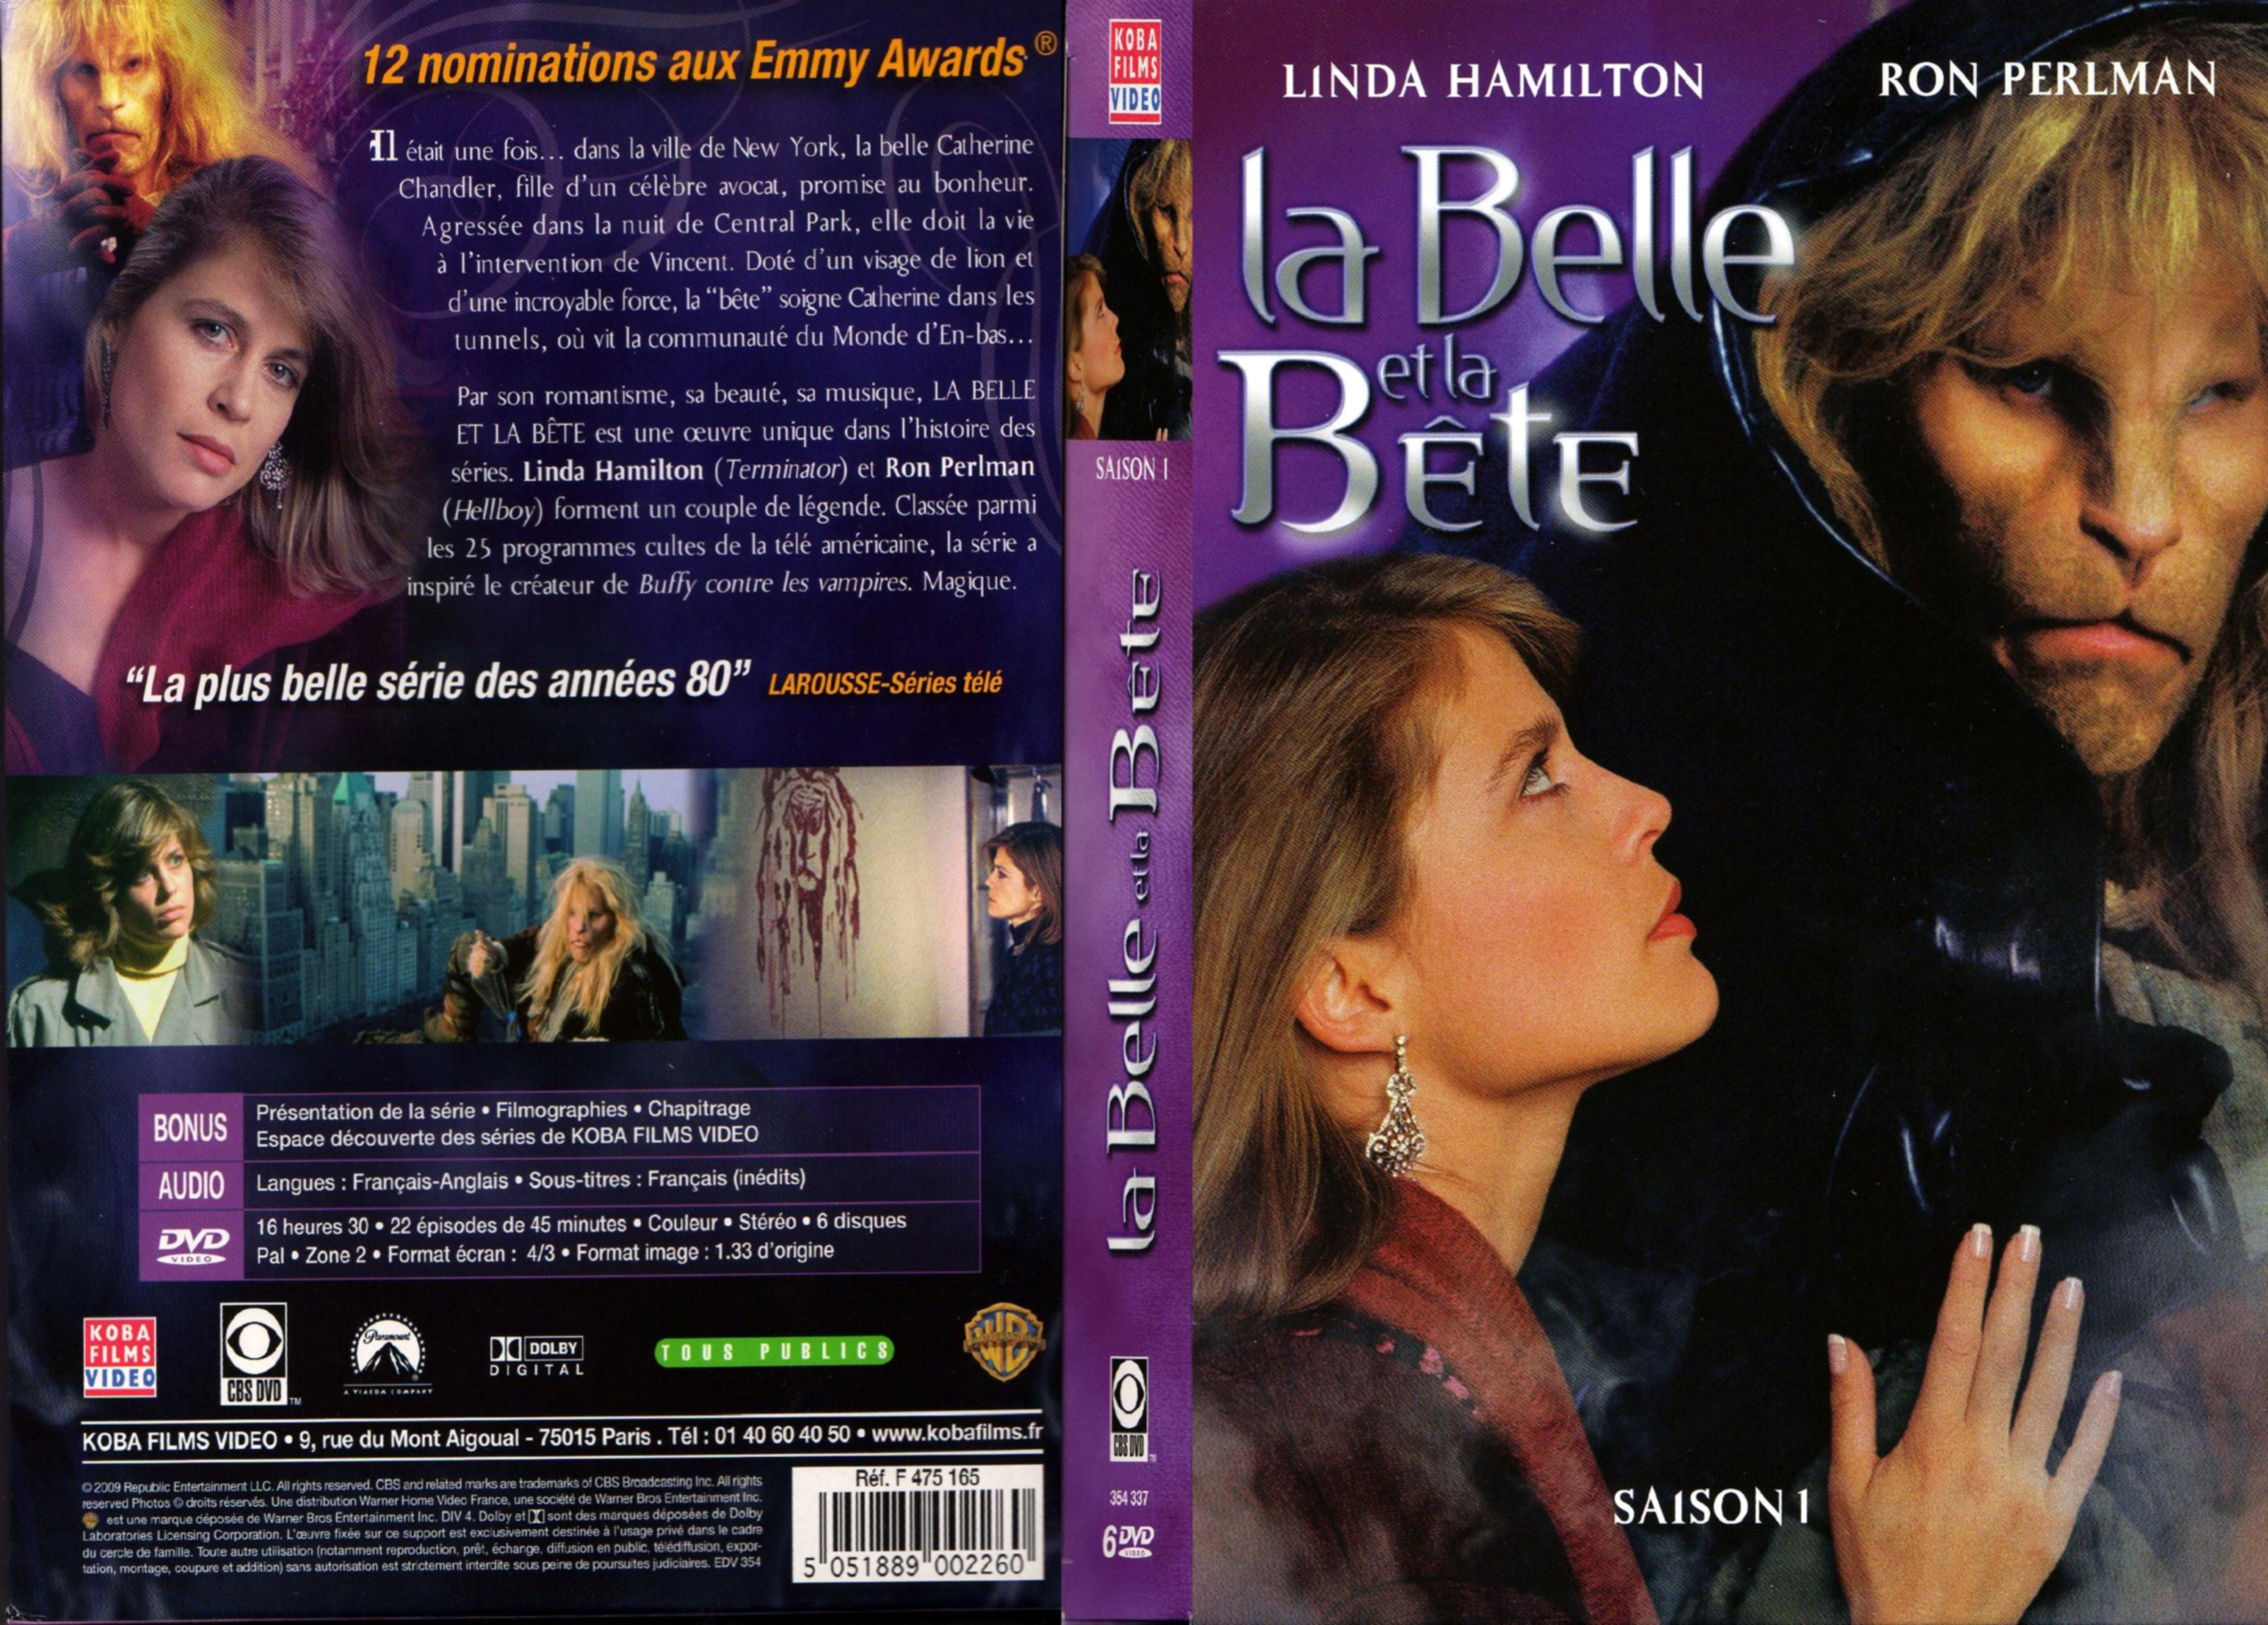 Jaquette DVD La belle et la bete Saison 1